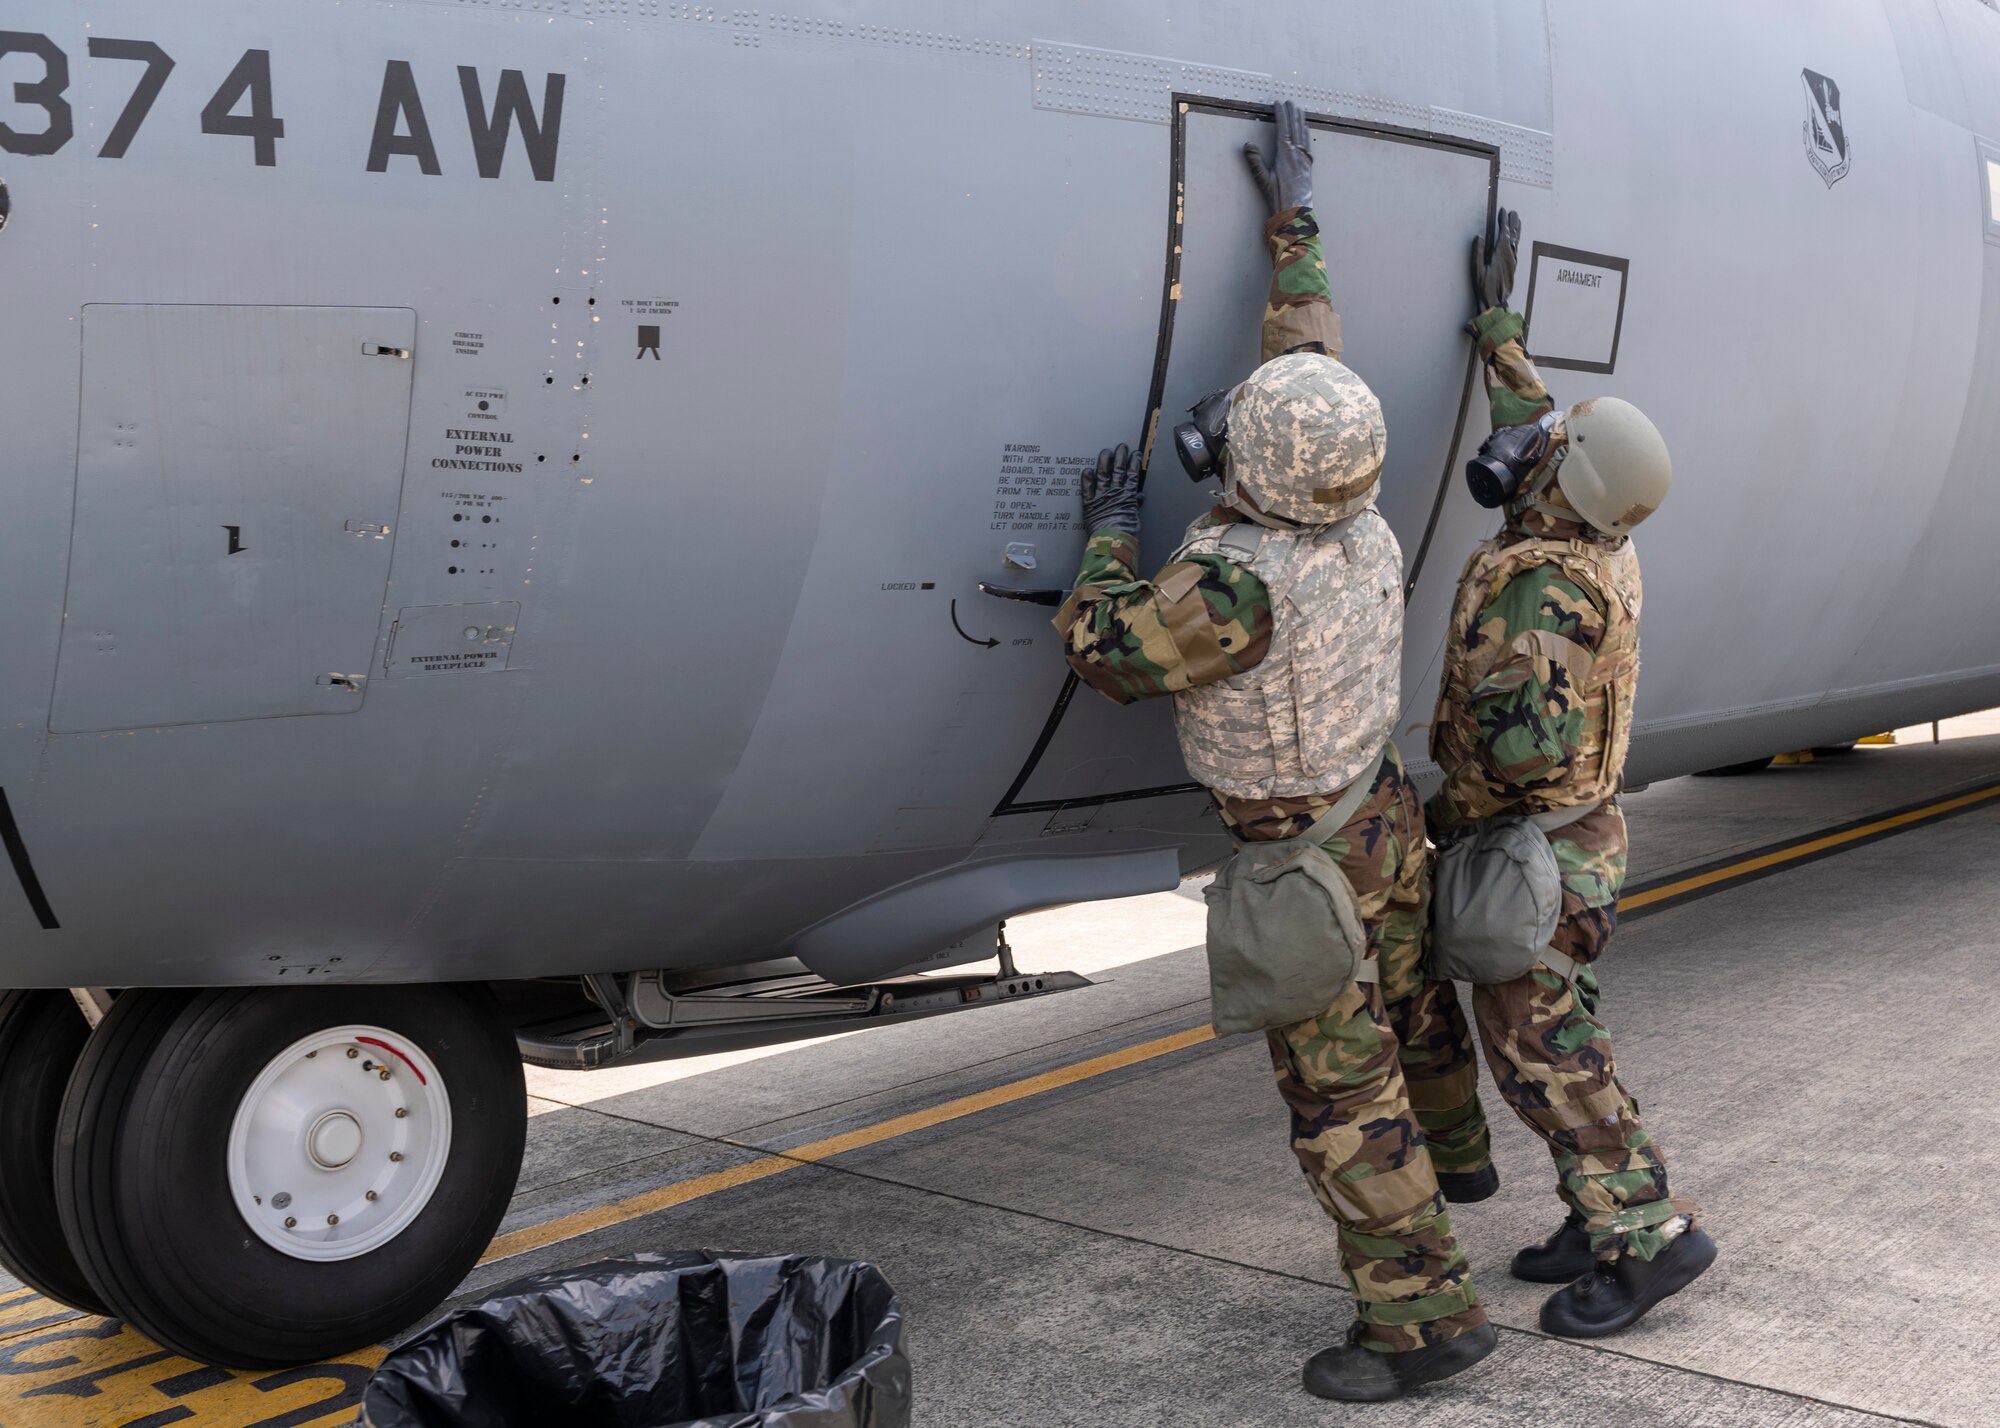 Two airmen in HAZMAT suits open an aircraft door